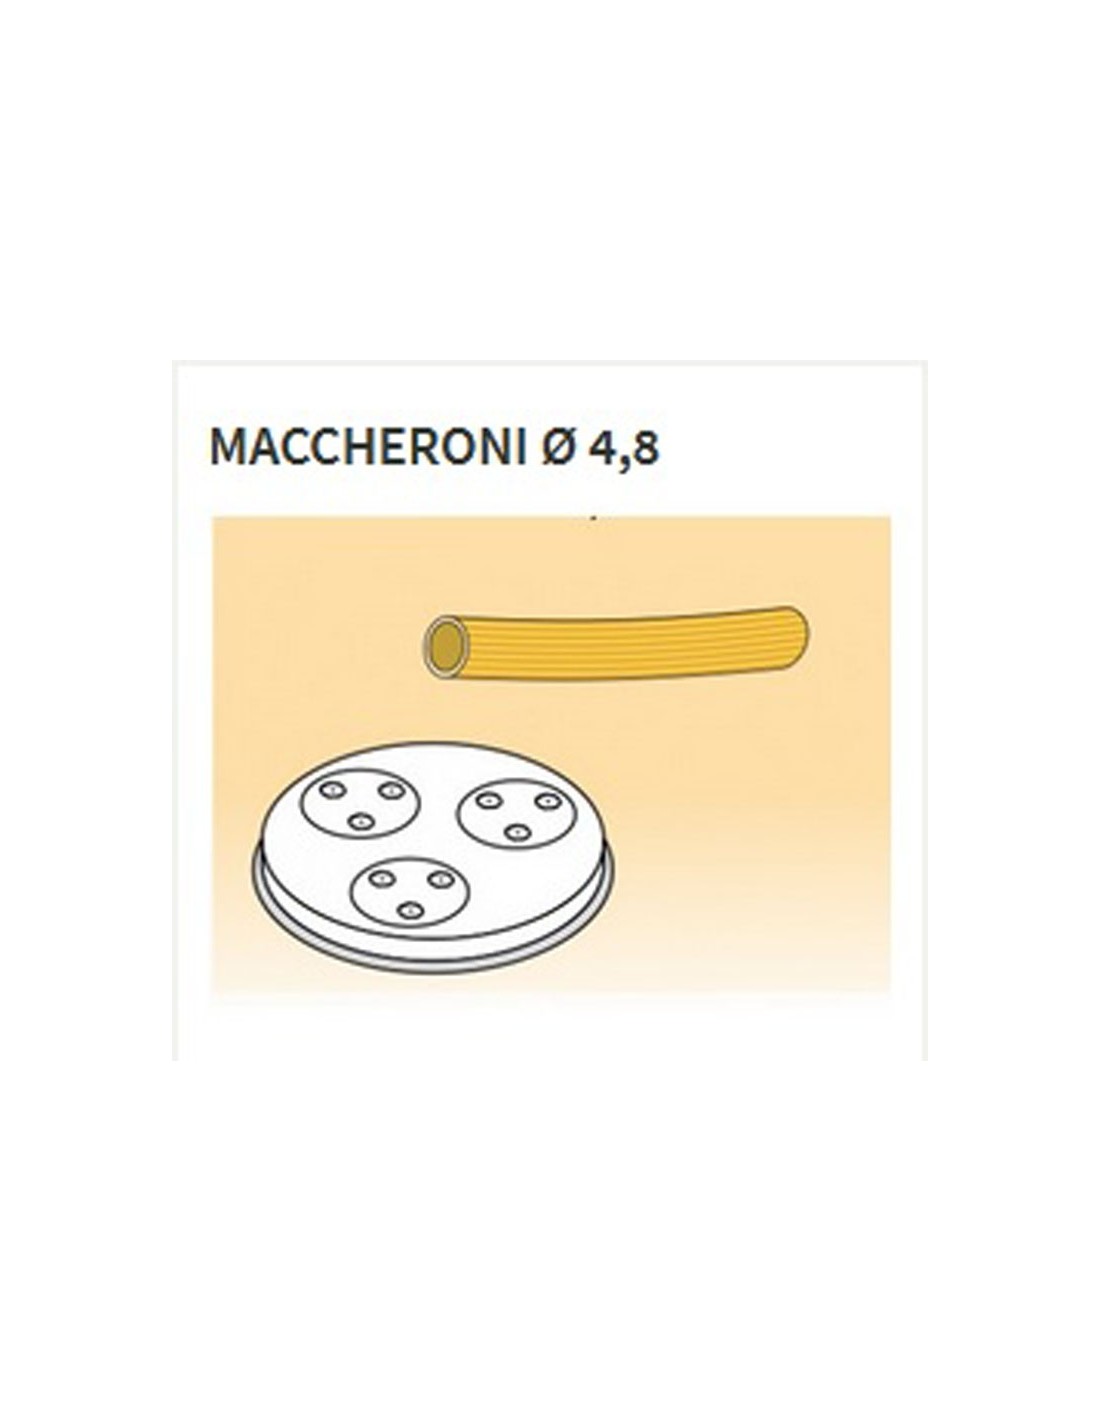 Matrices de aleación de latón de varias formas - Bronce - Para máquina de pasta fresca modelo MPF8N - Maccheroni Ø mm 4,8